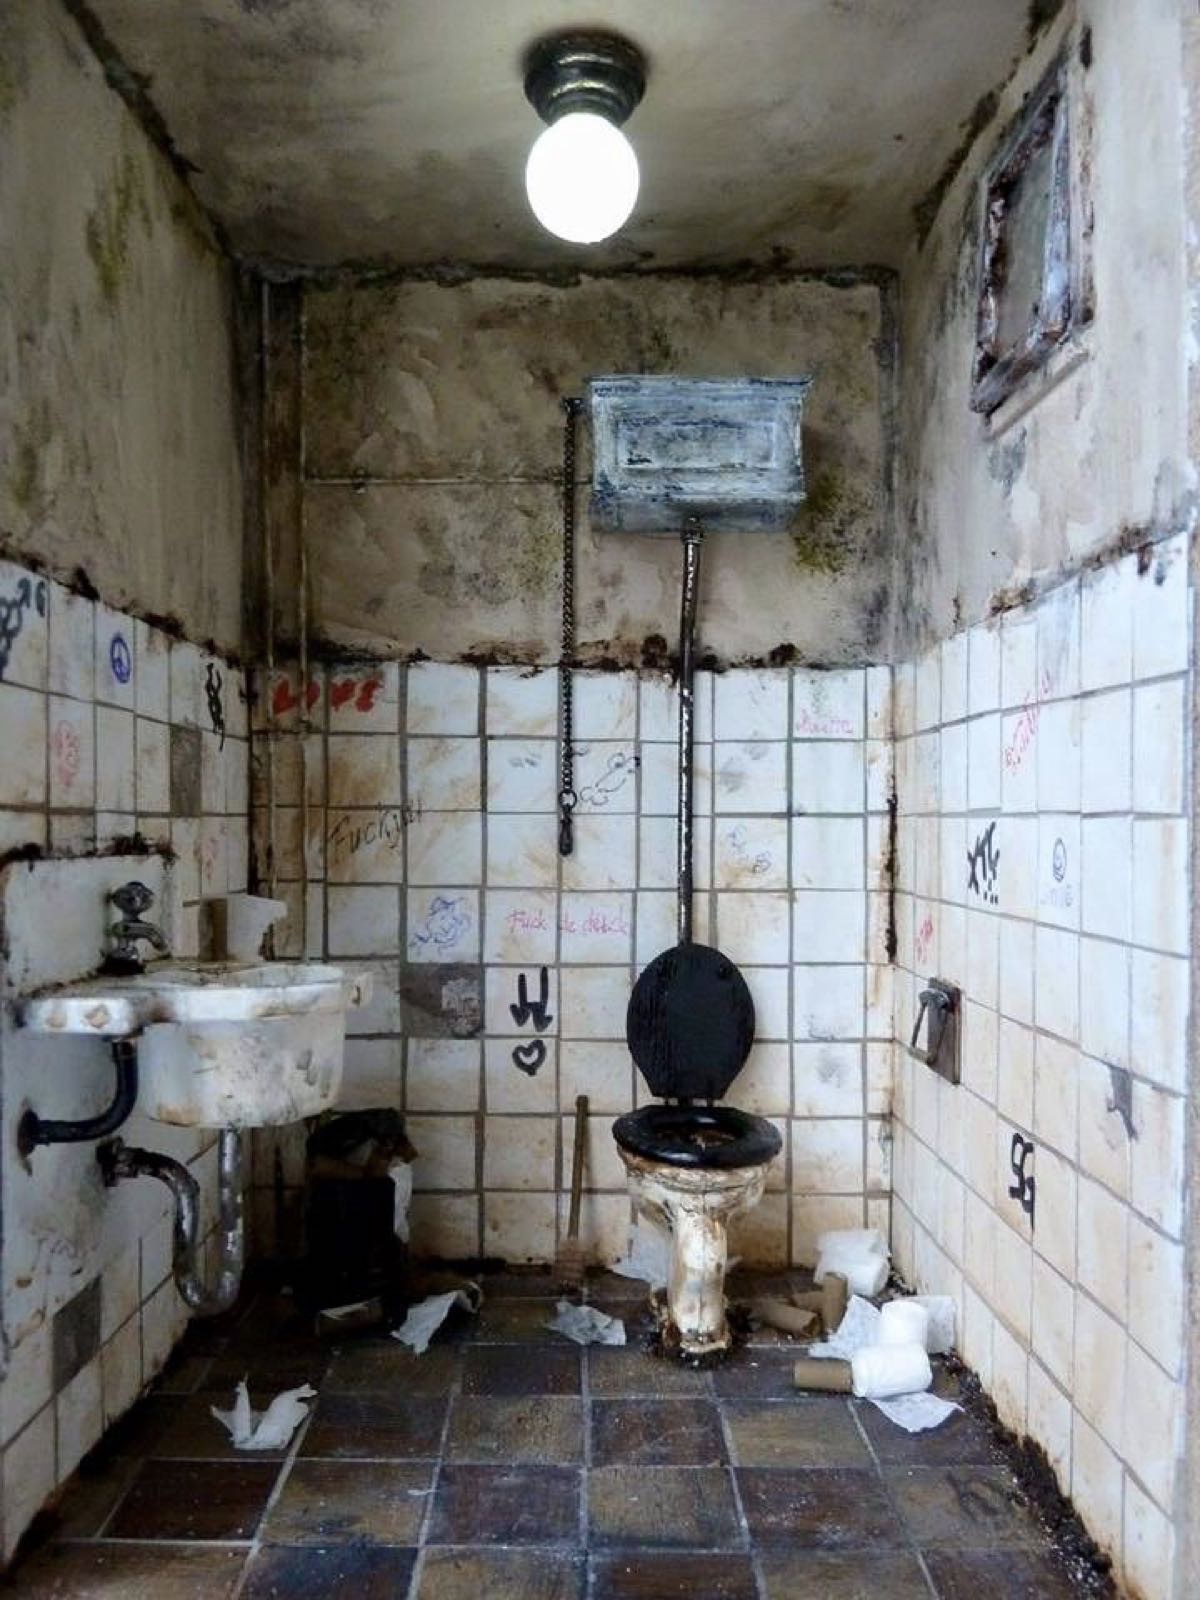 上海什么地方能找的到类似这种脏脏的厕所?拍摄场地也行～万分感谢!